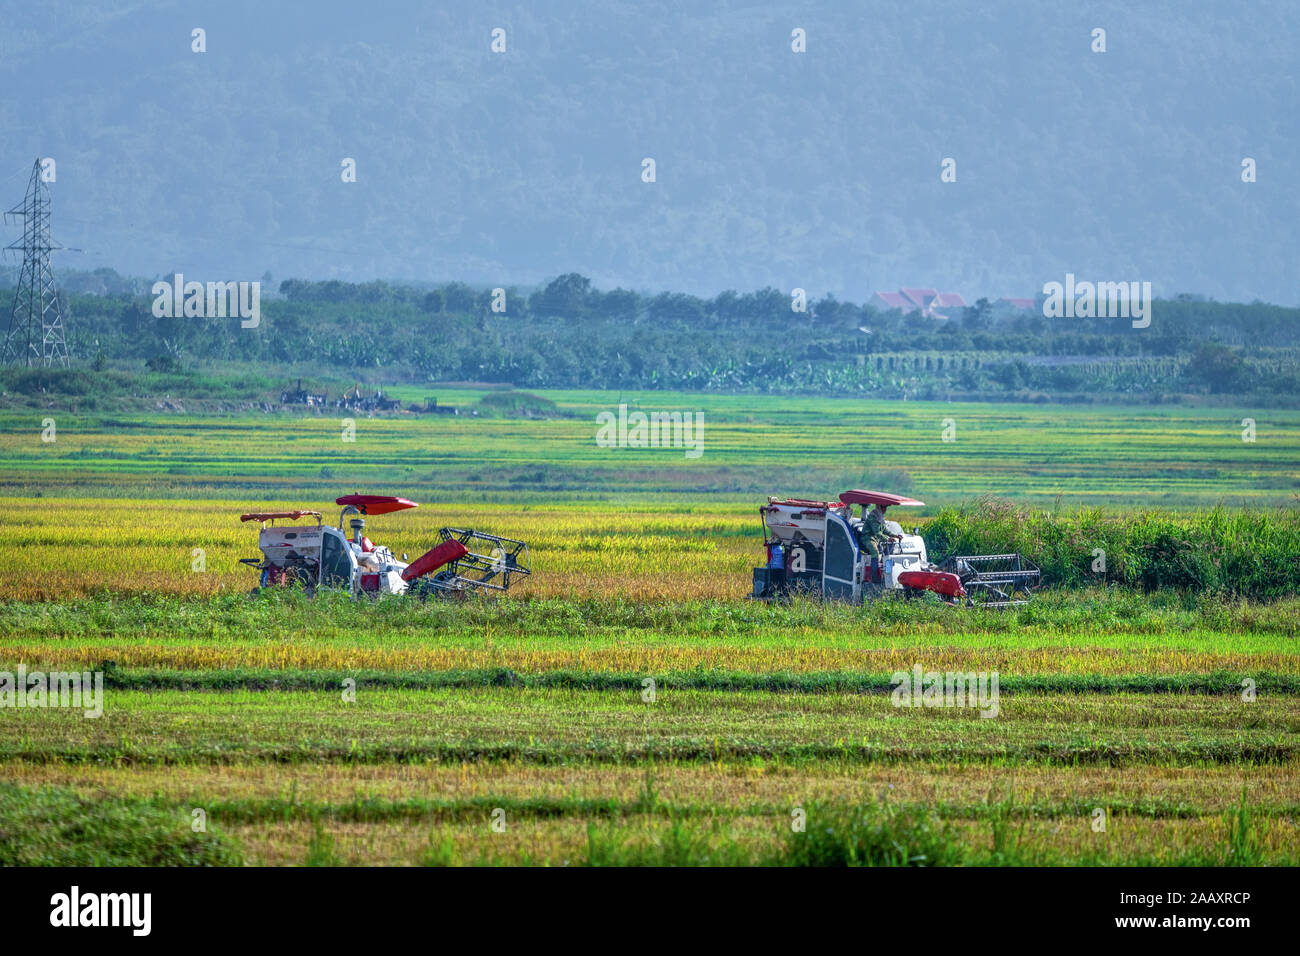 Agriculteur récoltant du riz sur le champ de riz Ong son, Gia Lai, Vietnam. Libre de droits de haute qualité libre de stock Panorama image paysage de terrasses rizières Banque D'Images